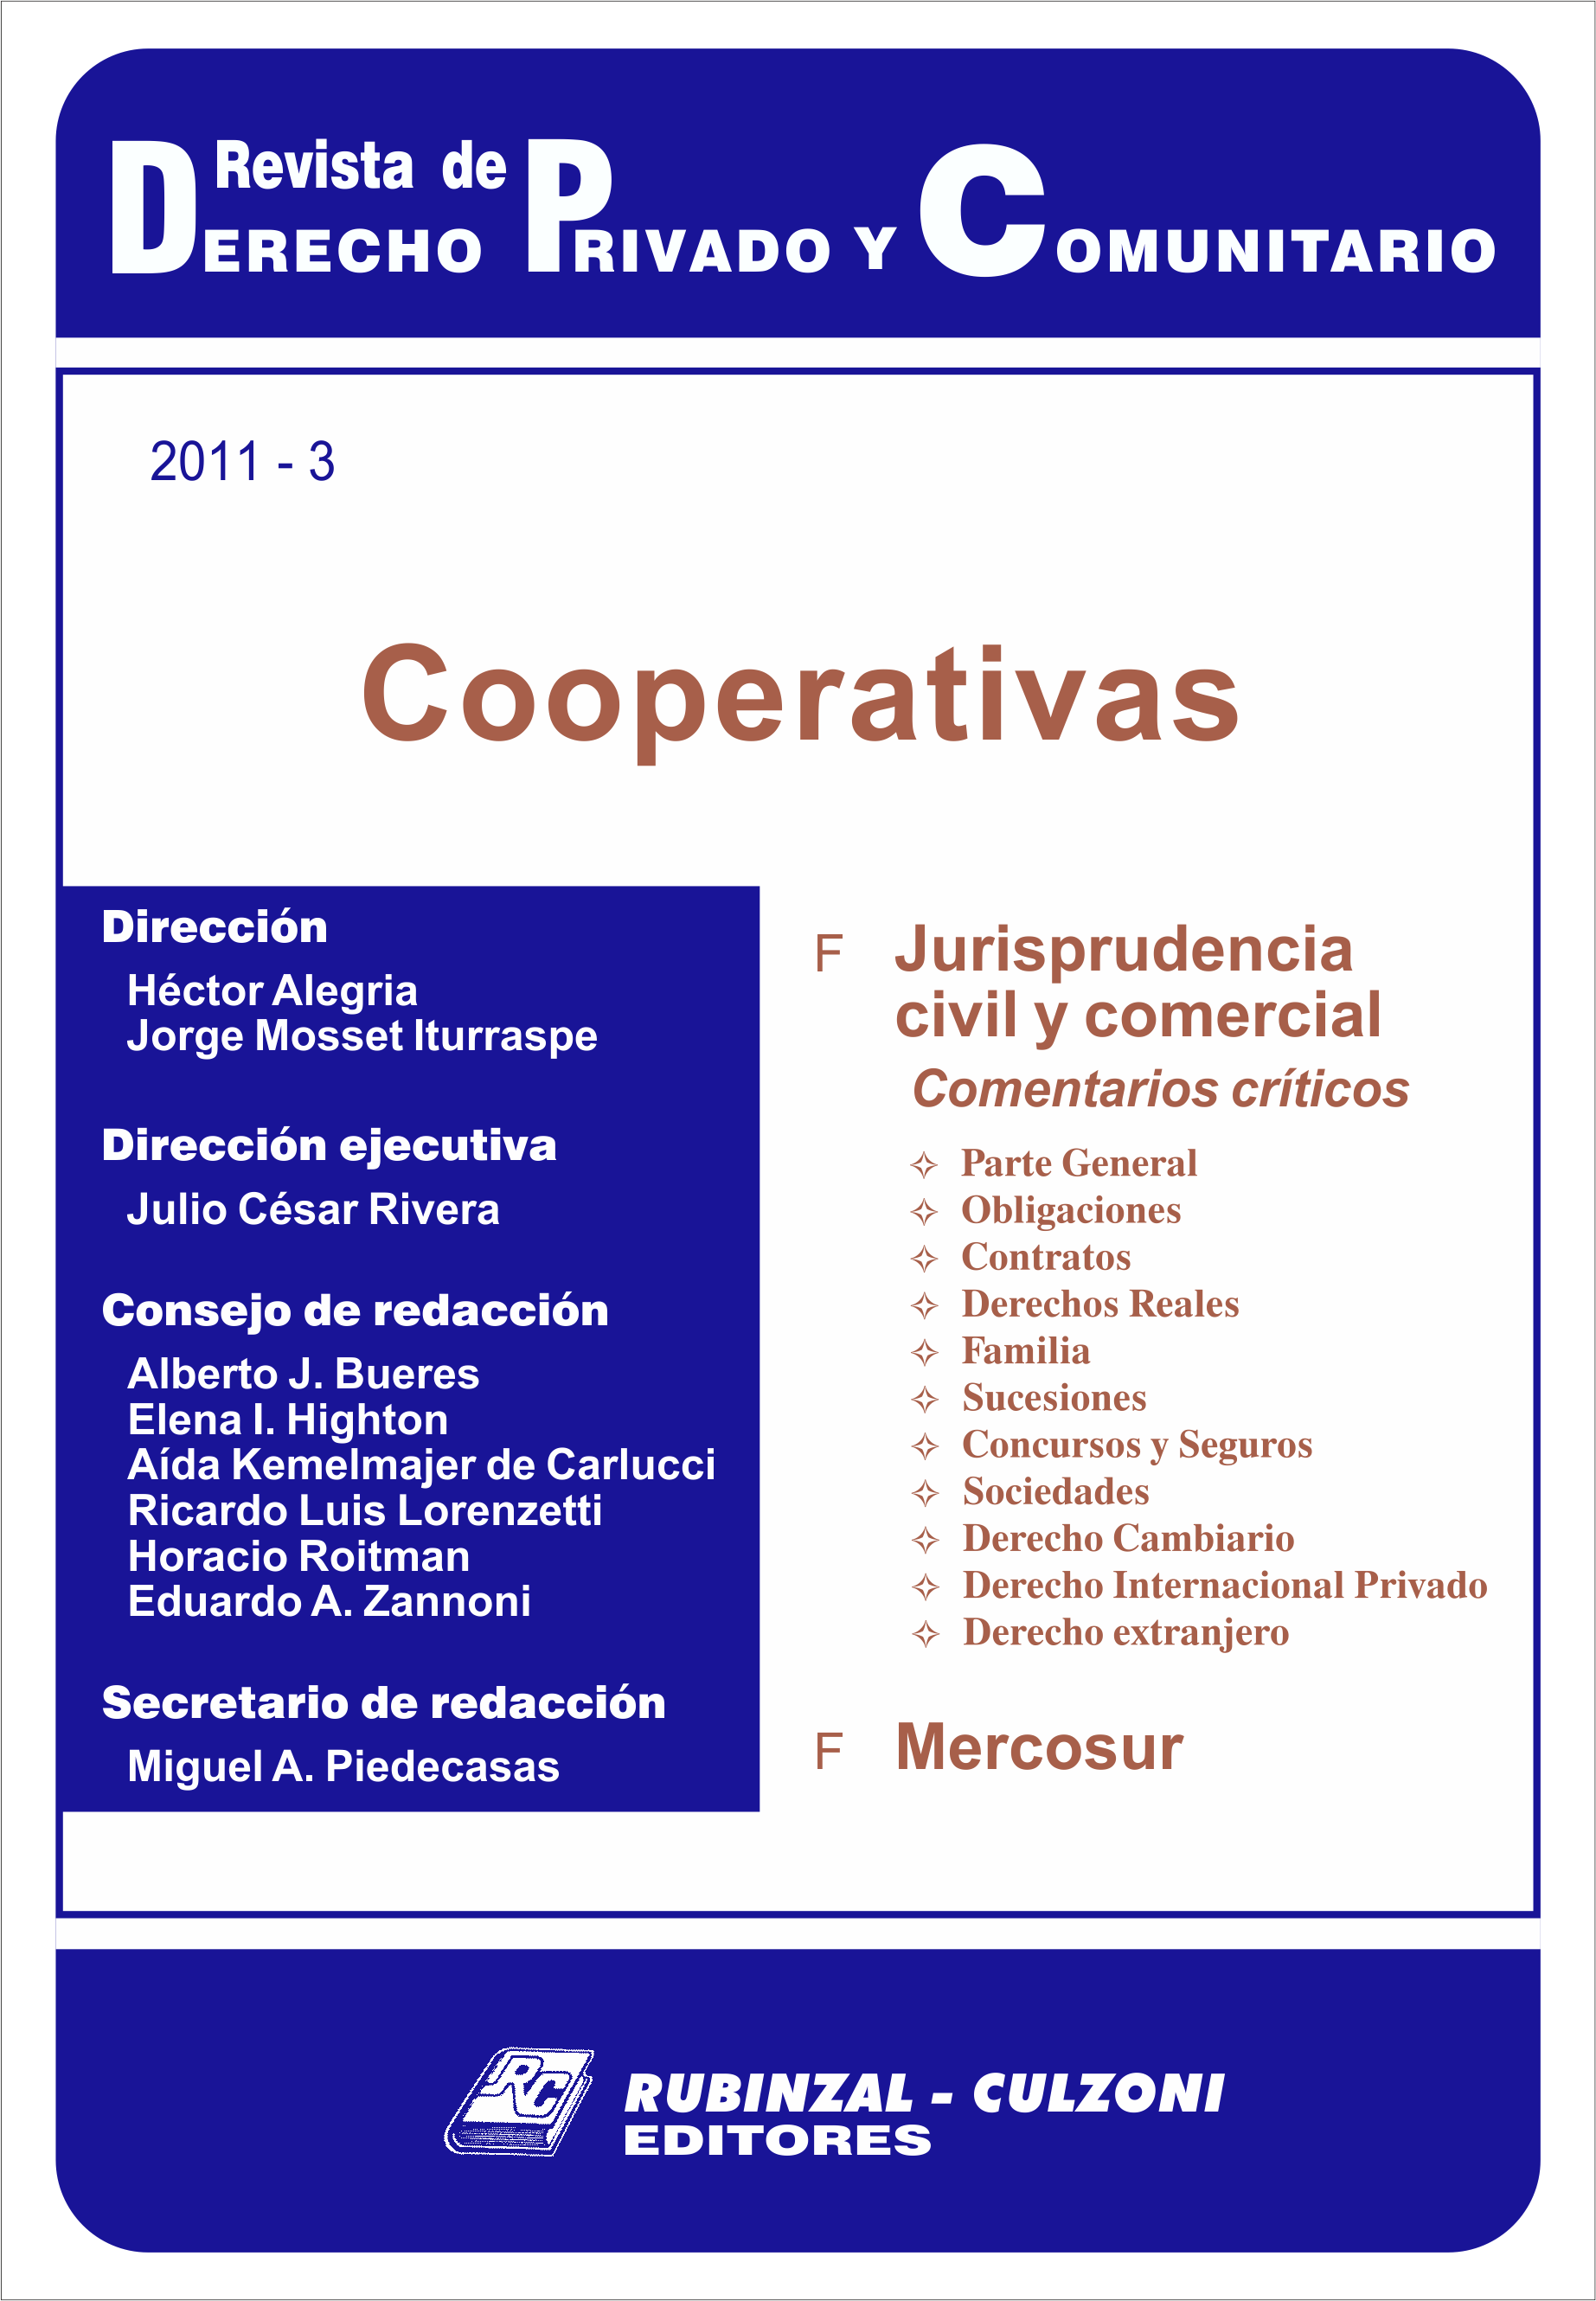 Revista de Derecho Privado y Comunitario - Cooperativas.